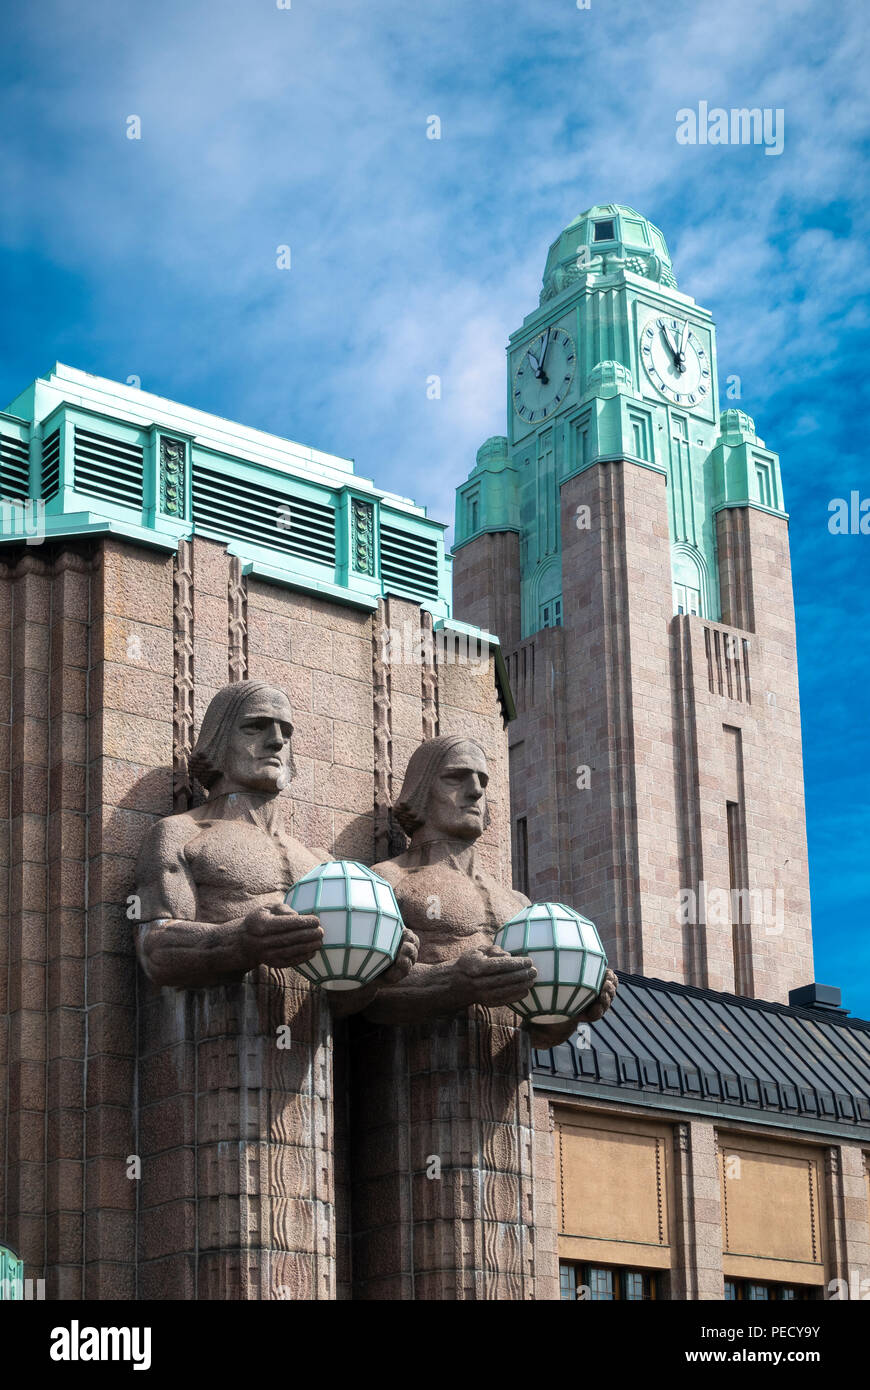 La Estación Central de Helsinki estatuas de piedra con dos hombres sosteniendo las lámparas y la torre del reloj de la estación. Foto de stock